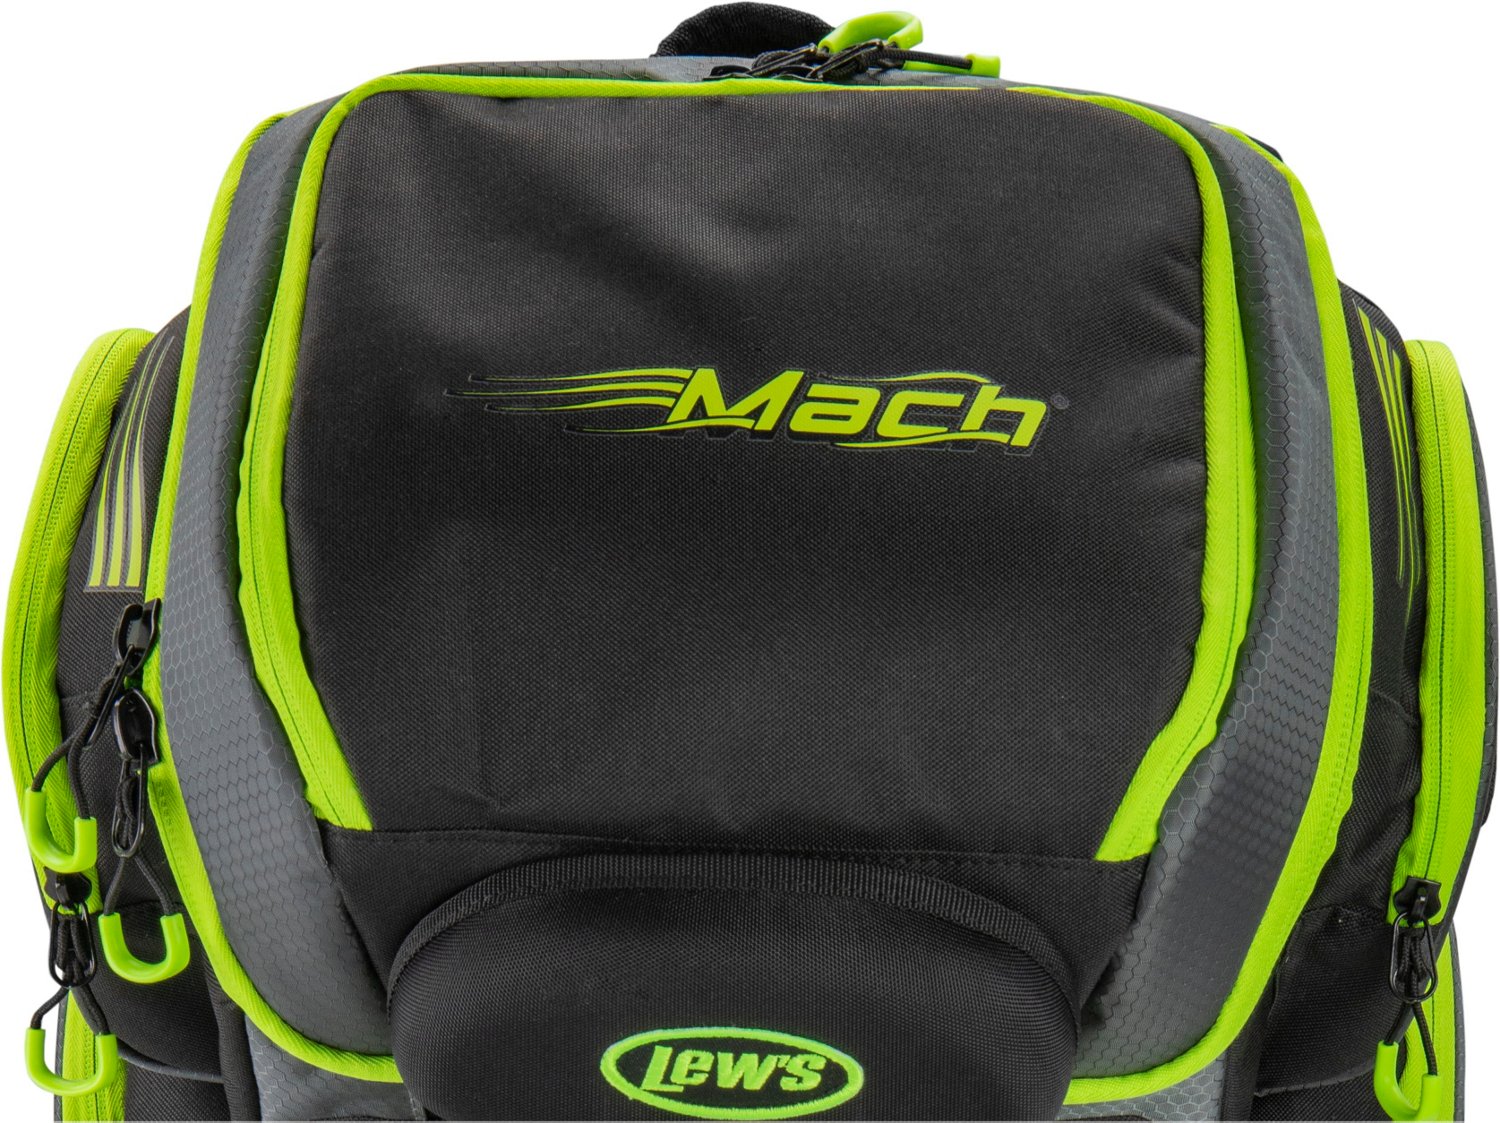 Lew's Mach Hatchback Tackle Bag